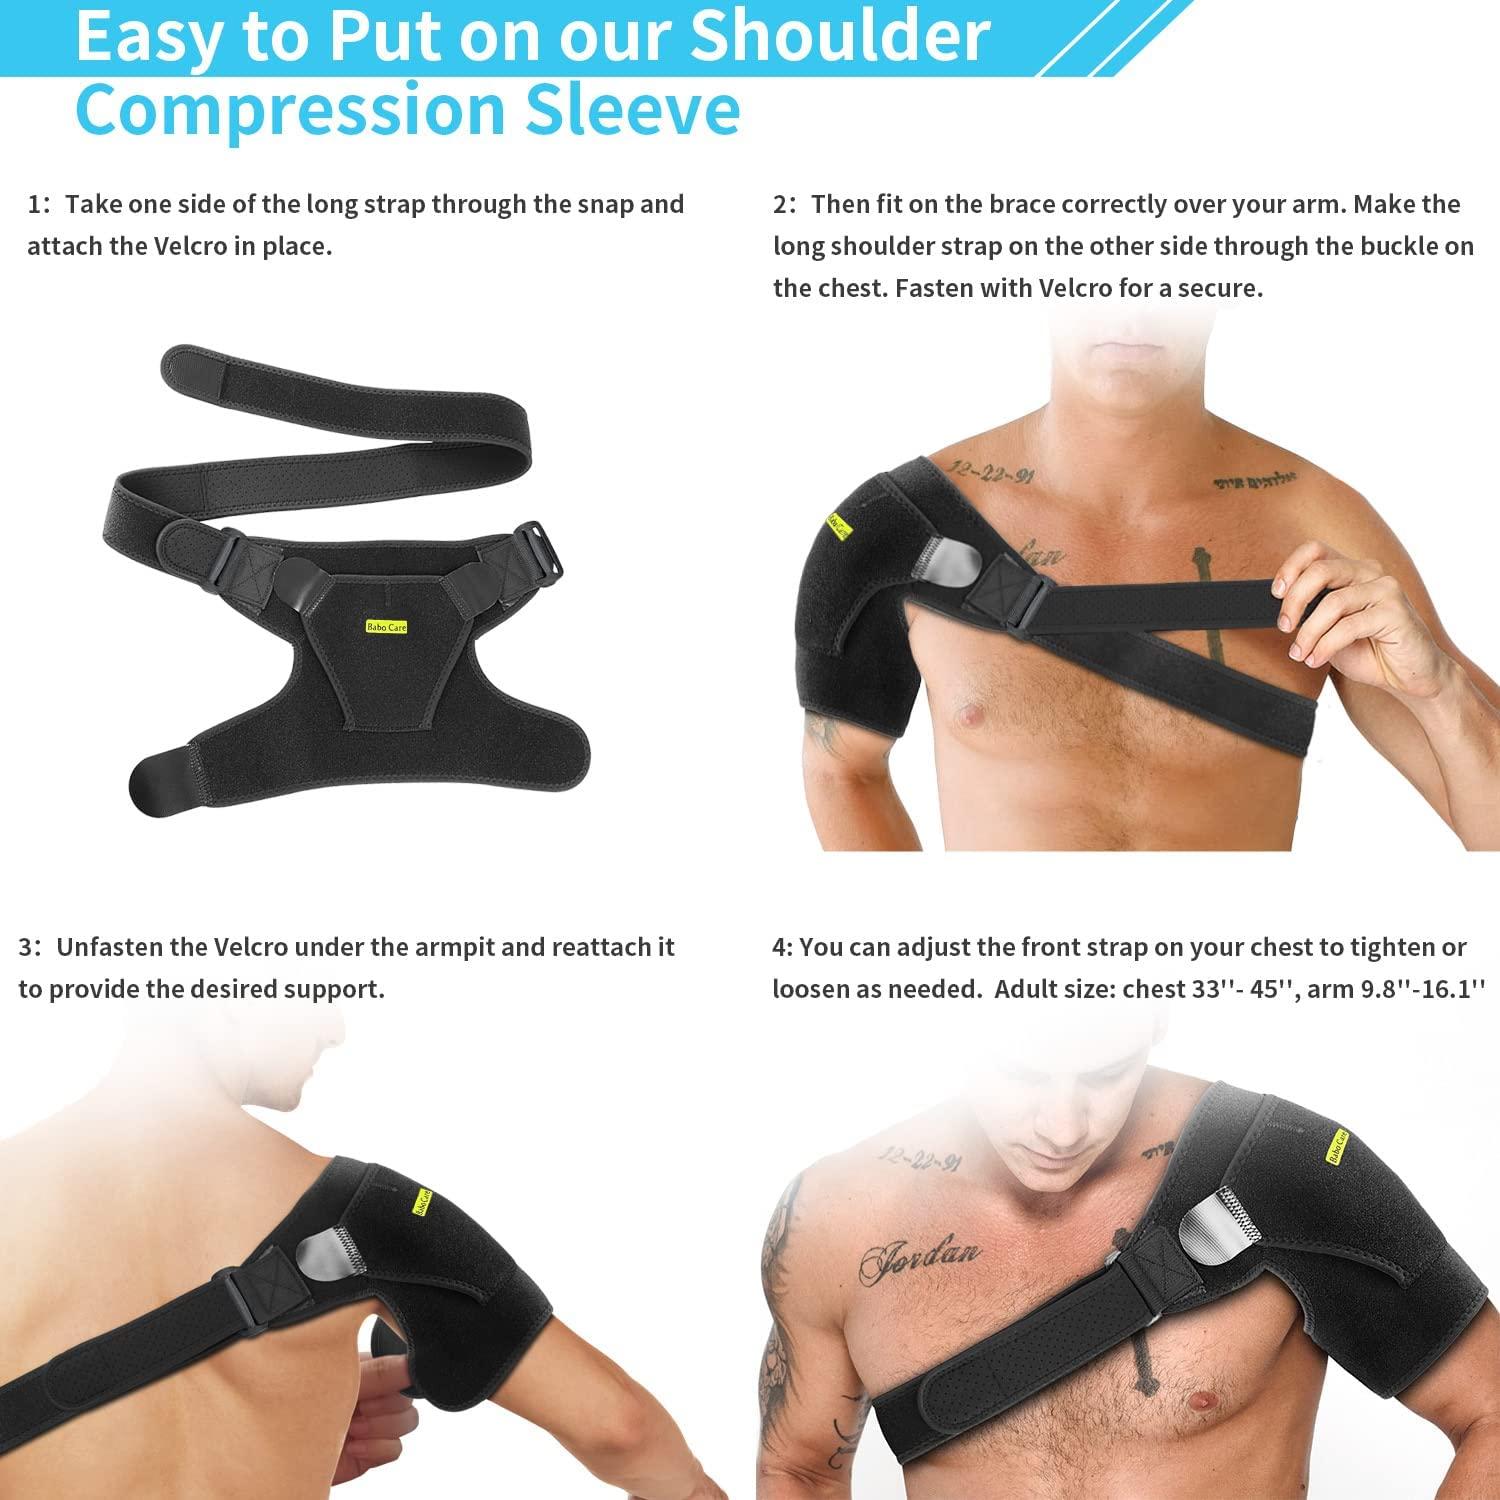 Order A Size Up, Sports Shoulder Pad, Breathable Pressure Adjustable  Shoulder Pad, Neoprene Shoulder Pads For Men And Women